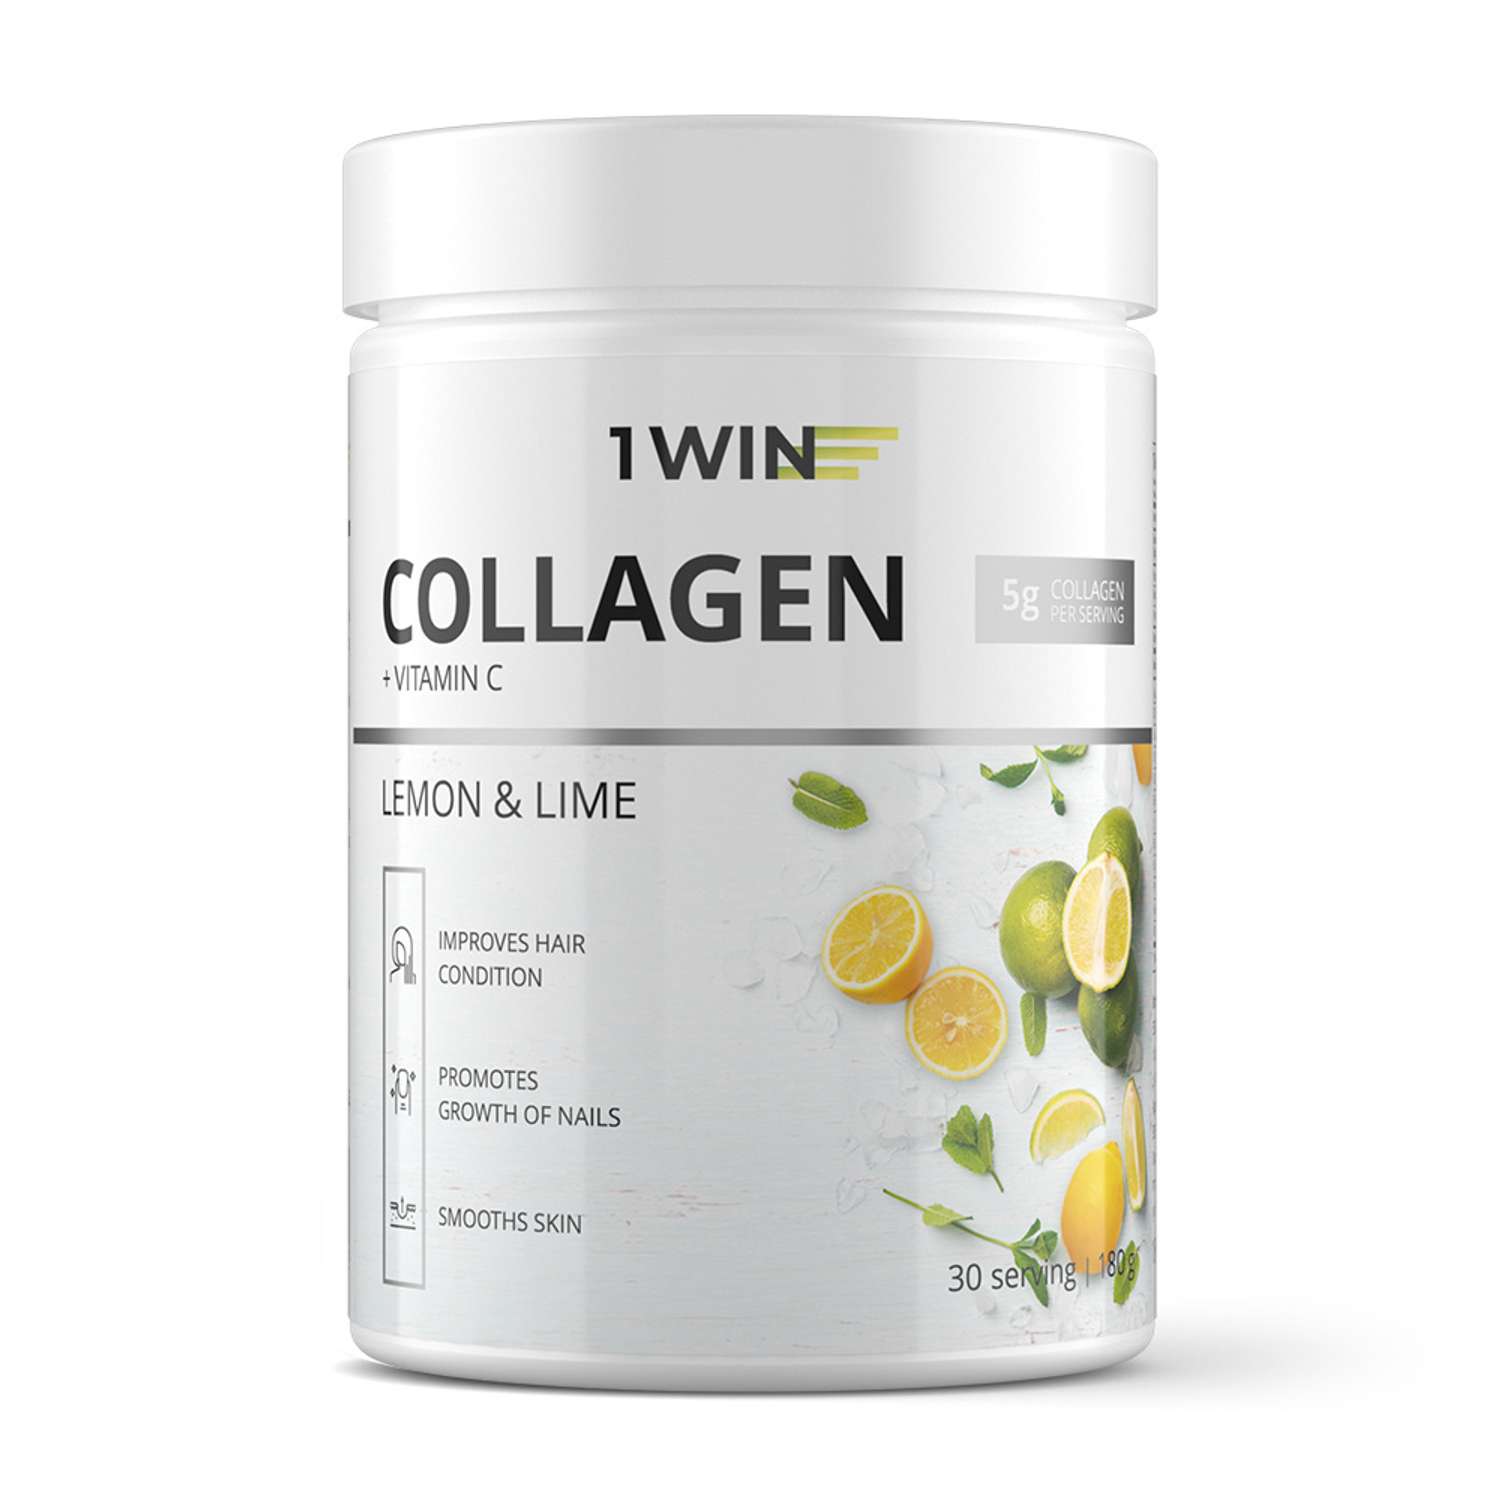 Коллаген 1WIN + Витамин С Вкус: Лимон – Лайм 30 порций 180 г - фото 1